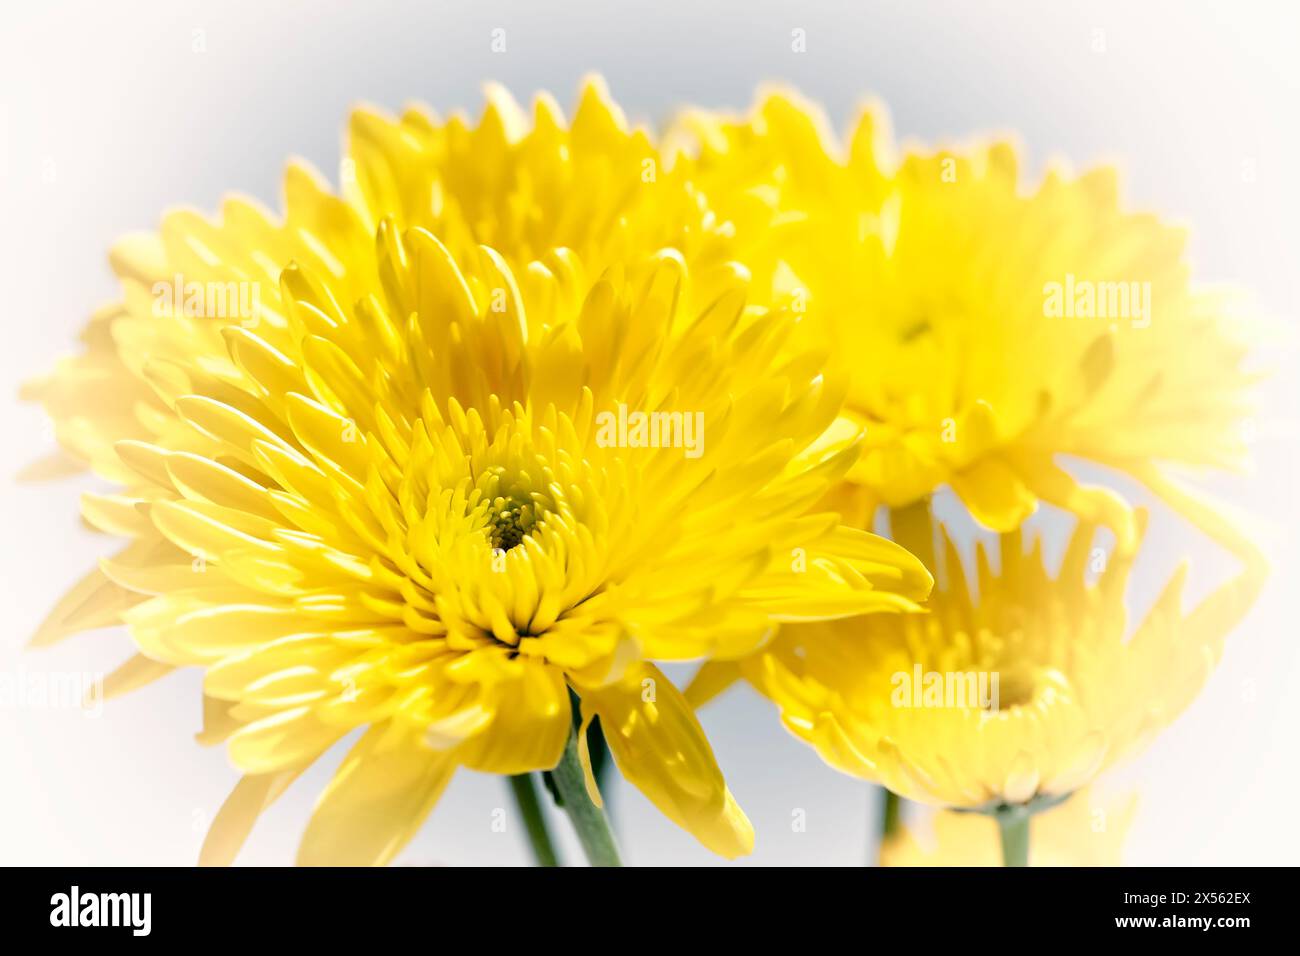 Groupe de fleurs de chrysanthème jaune, fraîches et florissantes sur un fond blanc doux Banque D'Images